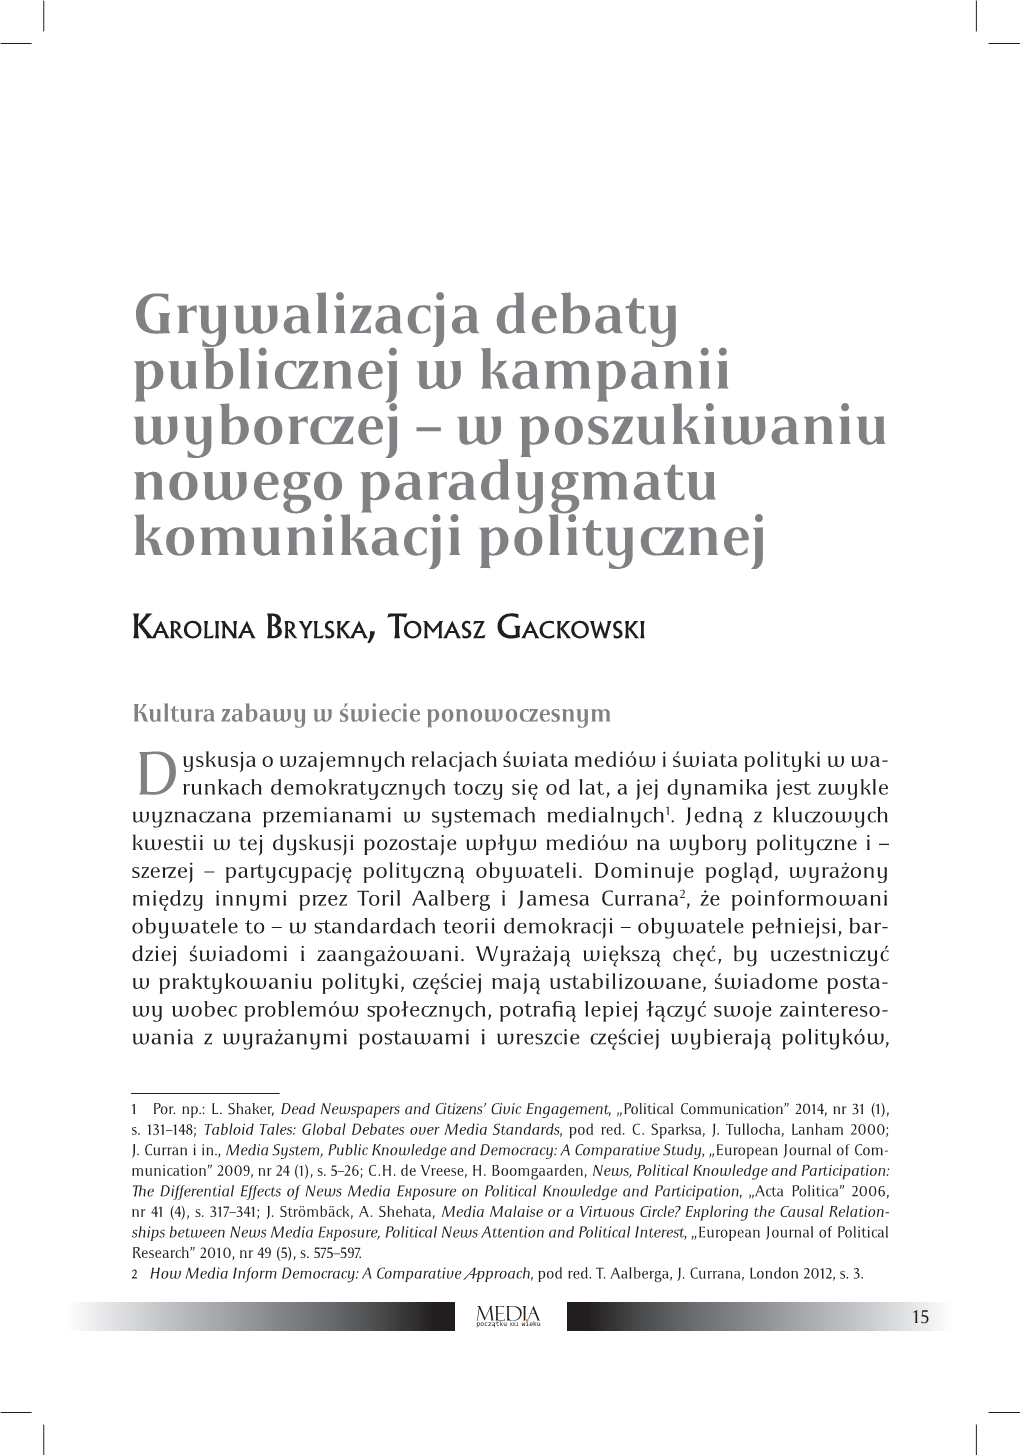 Grywalizacja Debaty Publicznej W Kampanii Wyborczej – W Poszukiwaniu Nowego Paradygmatu Komunikacji Politycznej